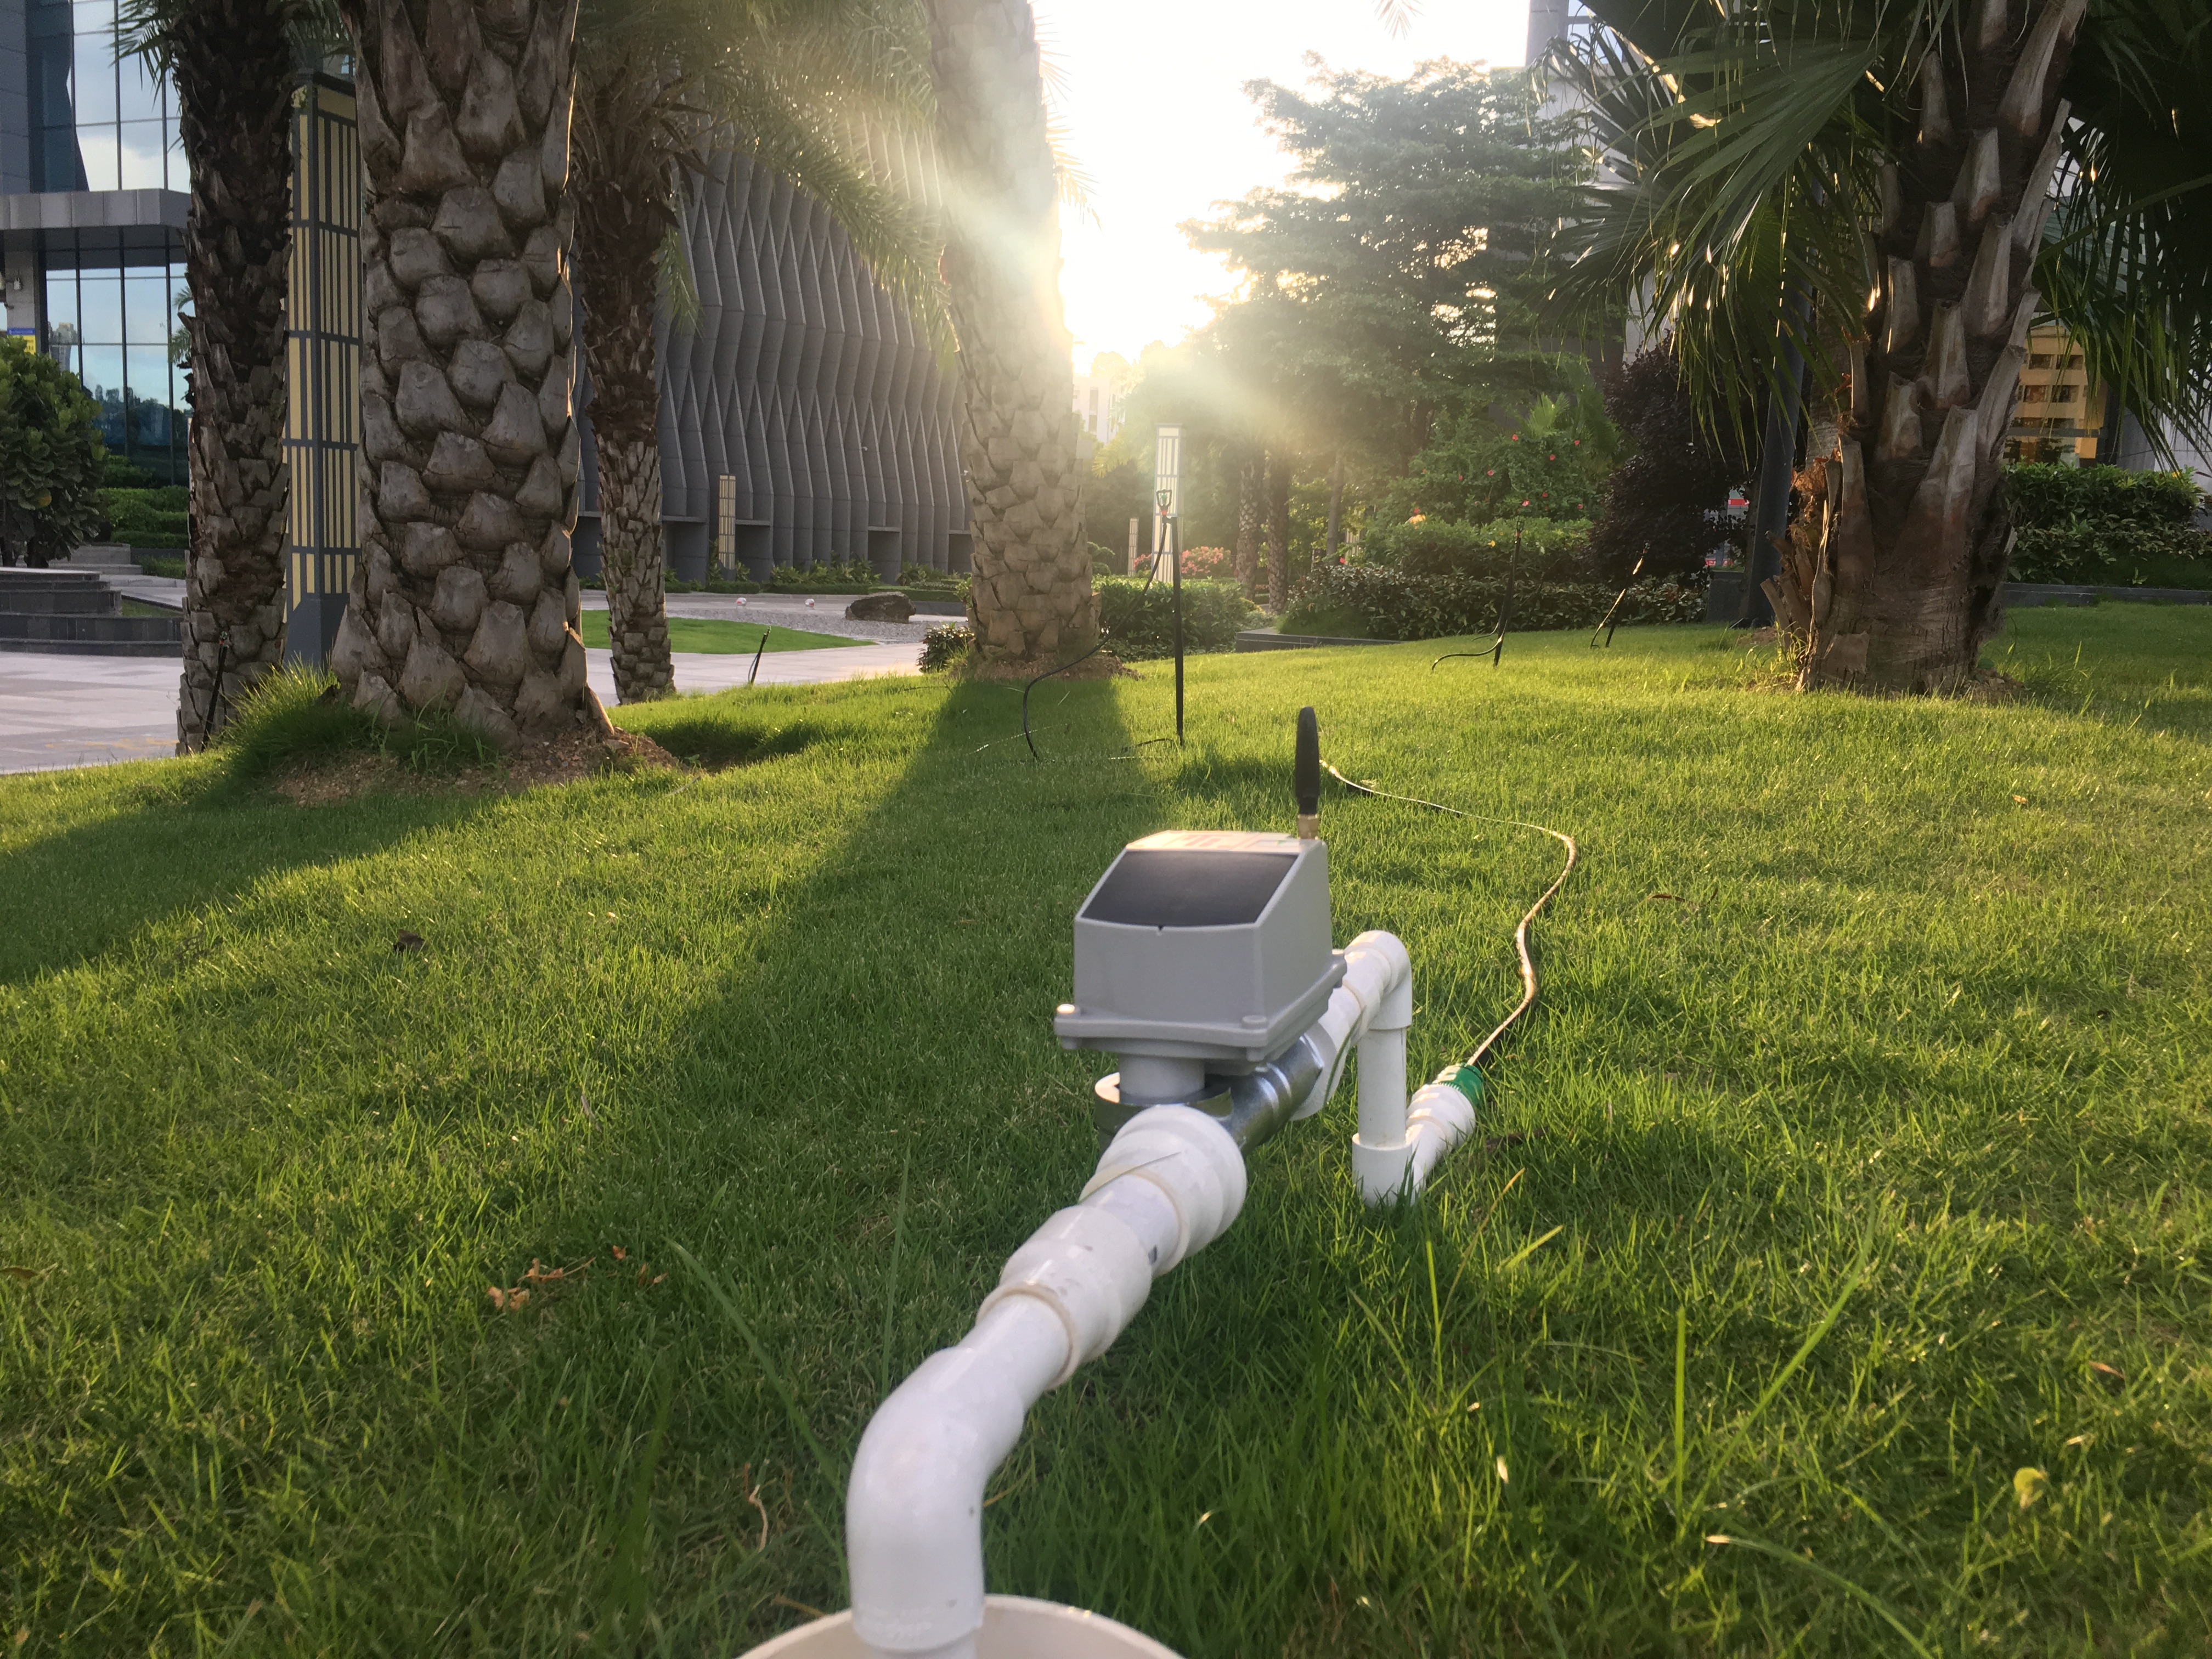 Lora/GSM Based Solar Powered Sprinkler Irrigation System for Tea Plantation